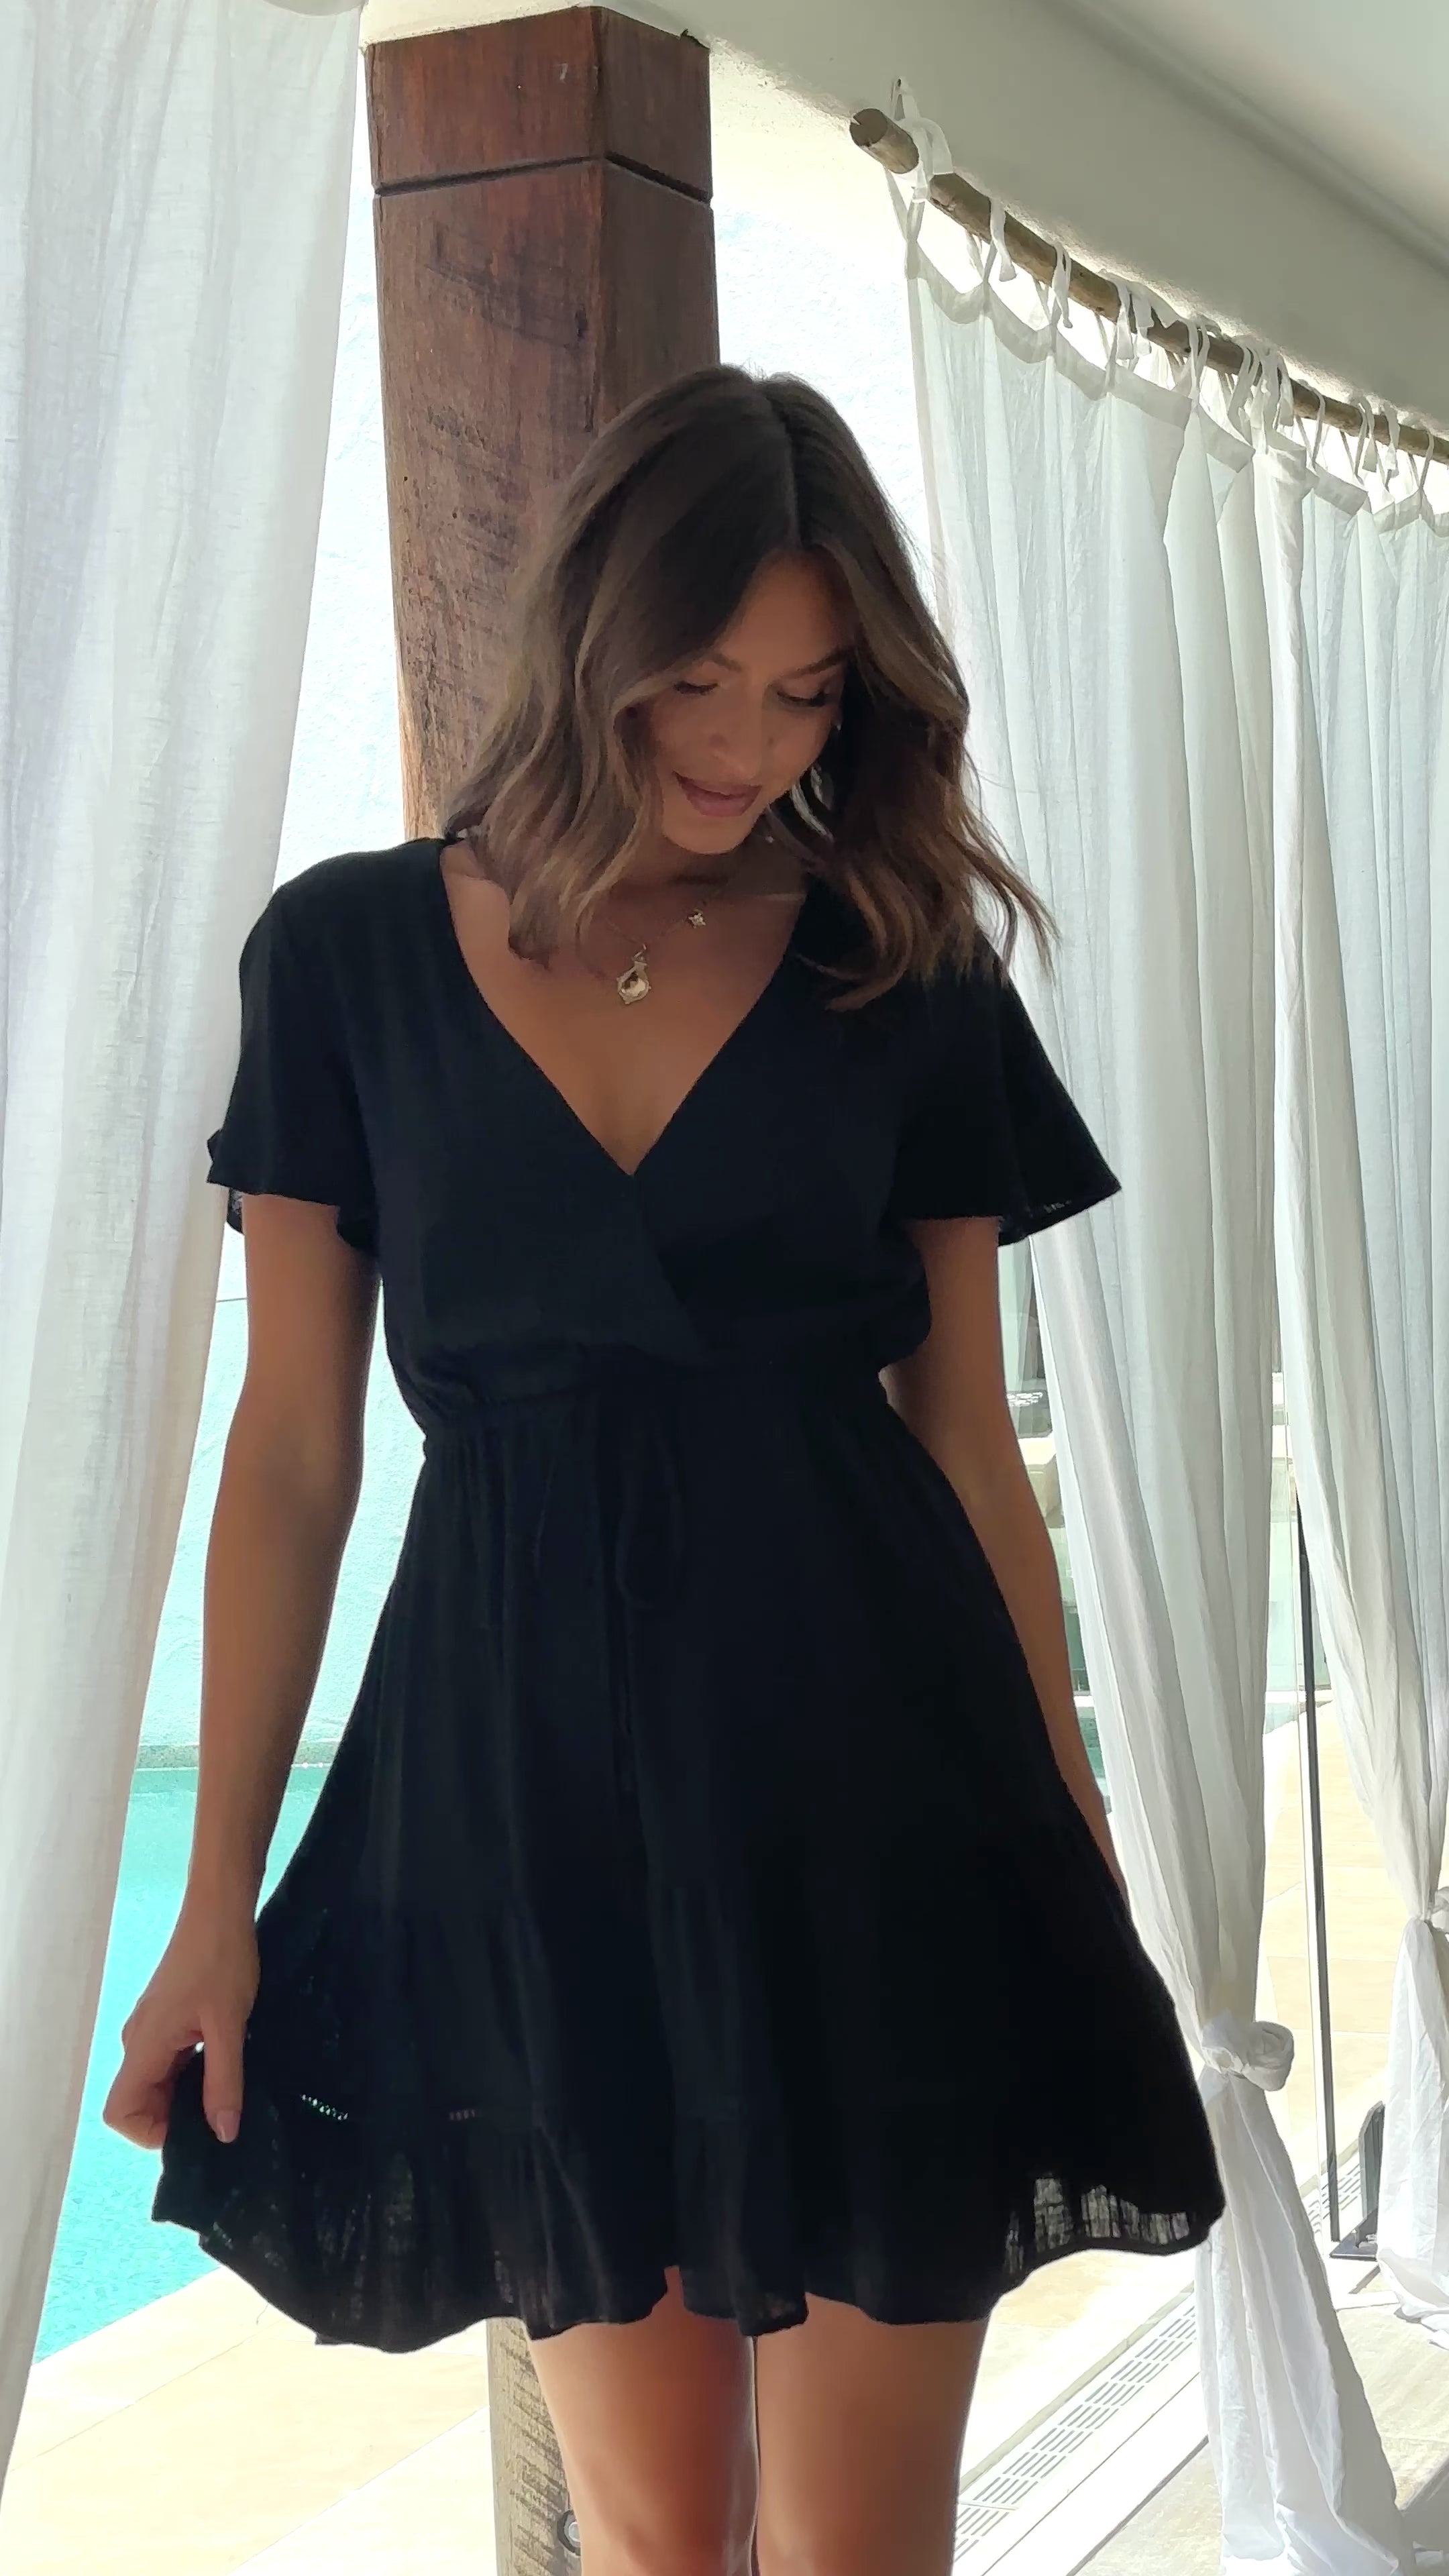 Sadelle Mini Dress - Black